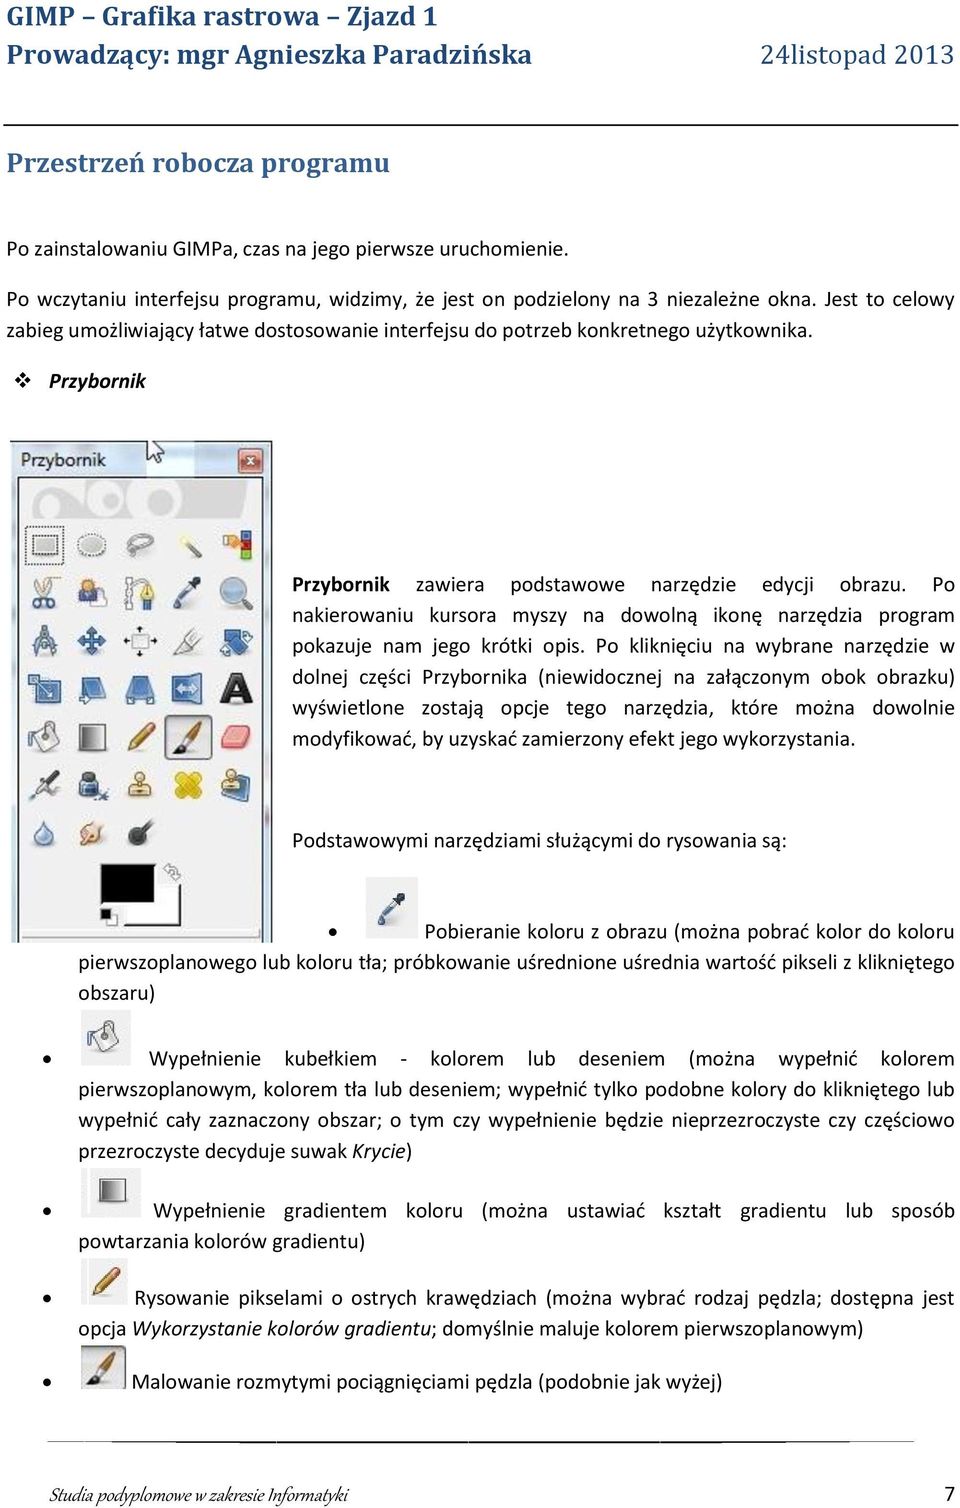 Po nakierowaniu kursora myszy na dowolną ikonę narzędzia program pokazuje nam jego krótki opis.